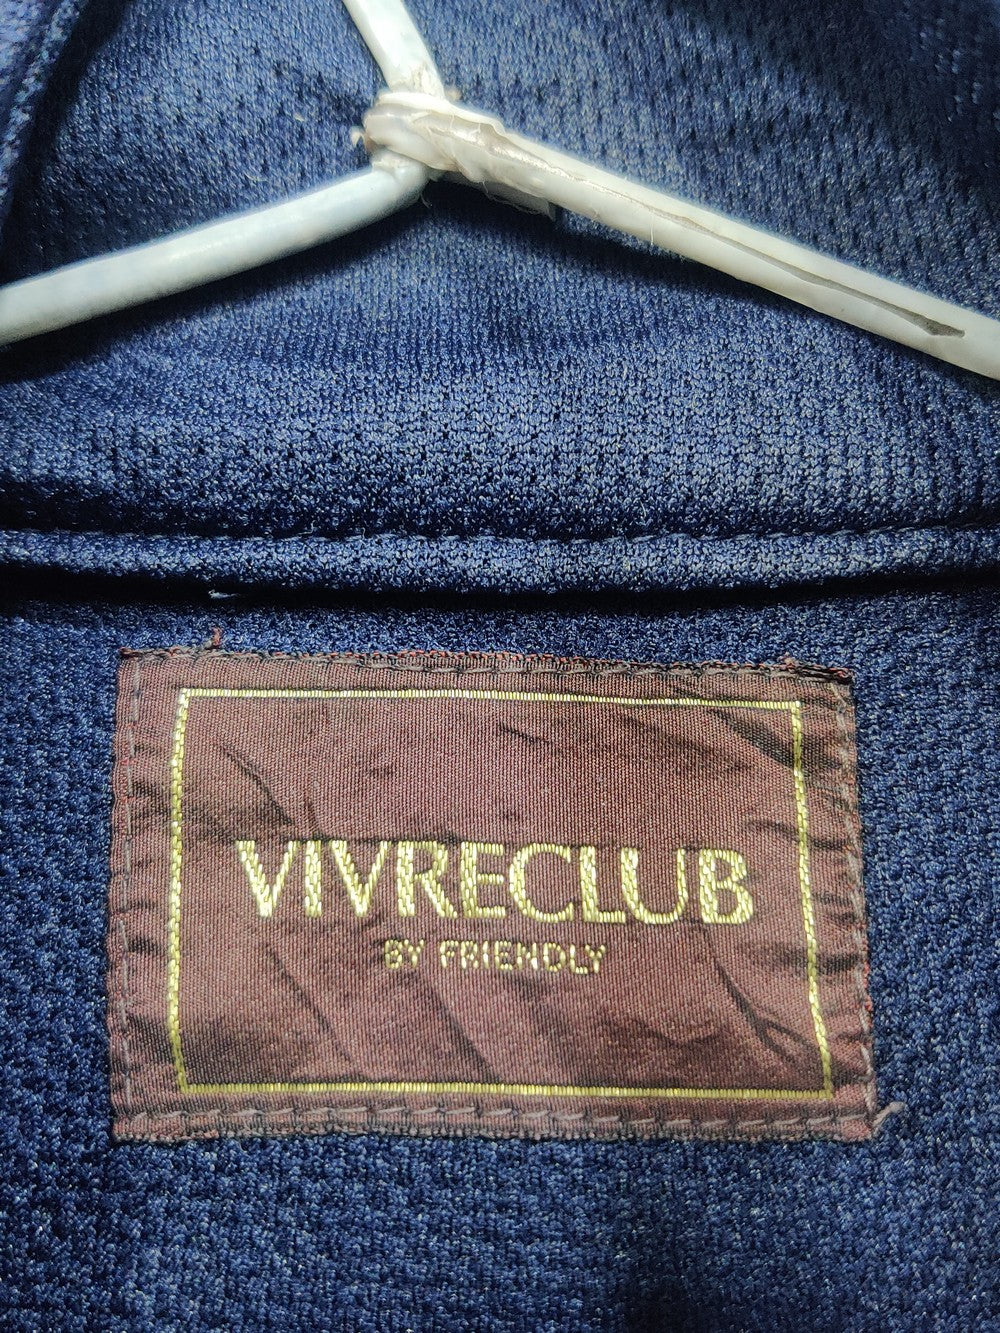 Vivreclub Branded Original Polyester For Men Tracksuits